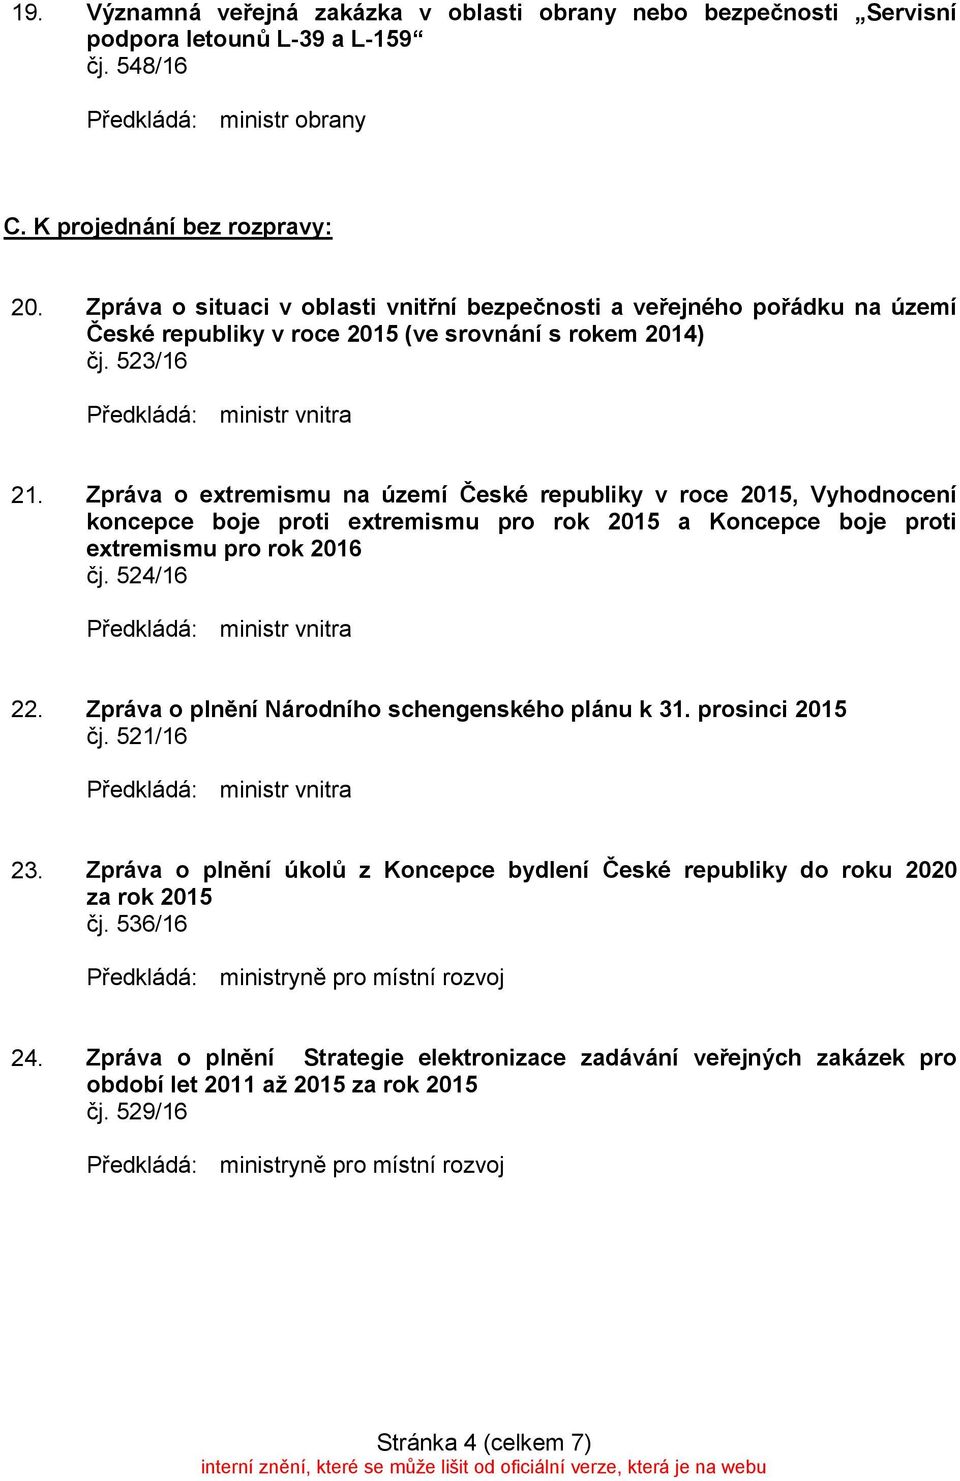 Zpráva o extremismu na území České republiky v roce 2015, Vyhodnocení koncepce boje proti extremismu pro rok 2015 a Koncepce boje proti extremismu pro rok 2016 čj. 524/16 22.